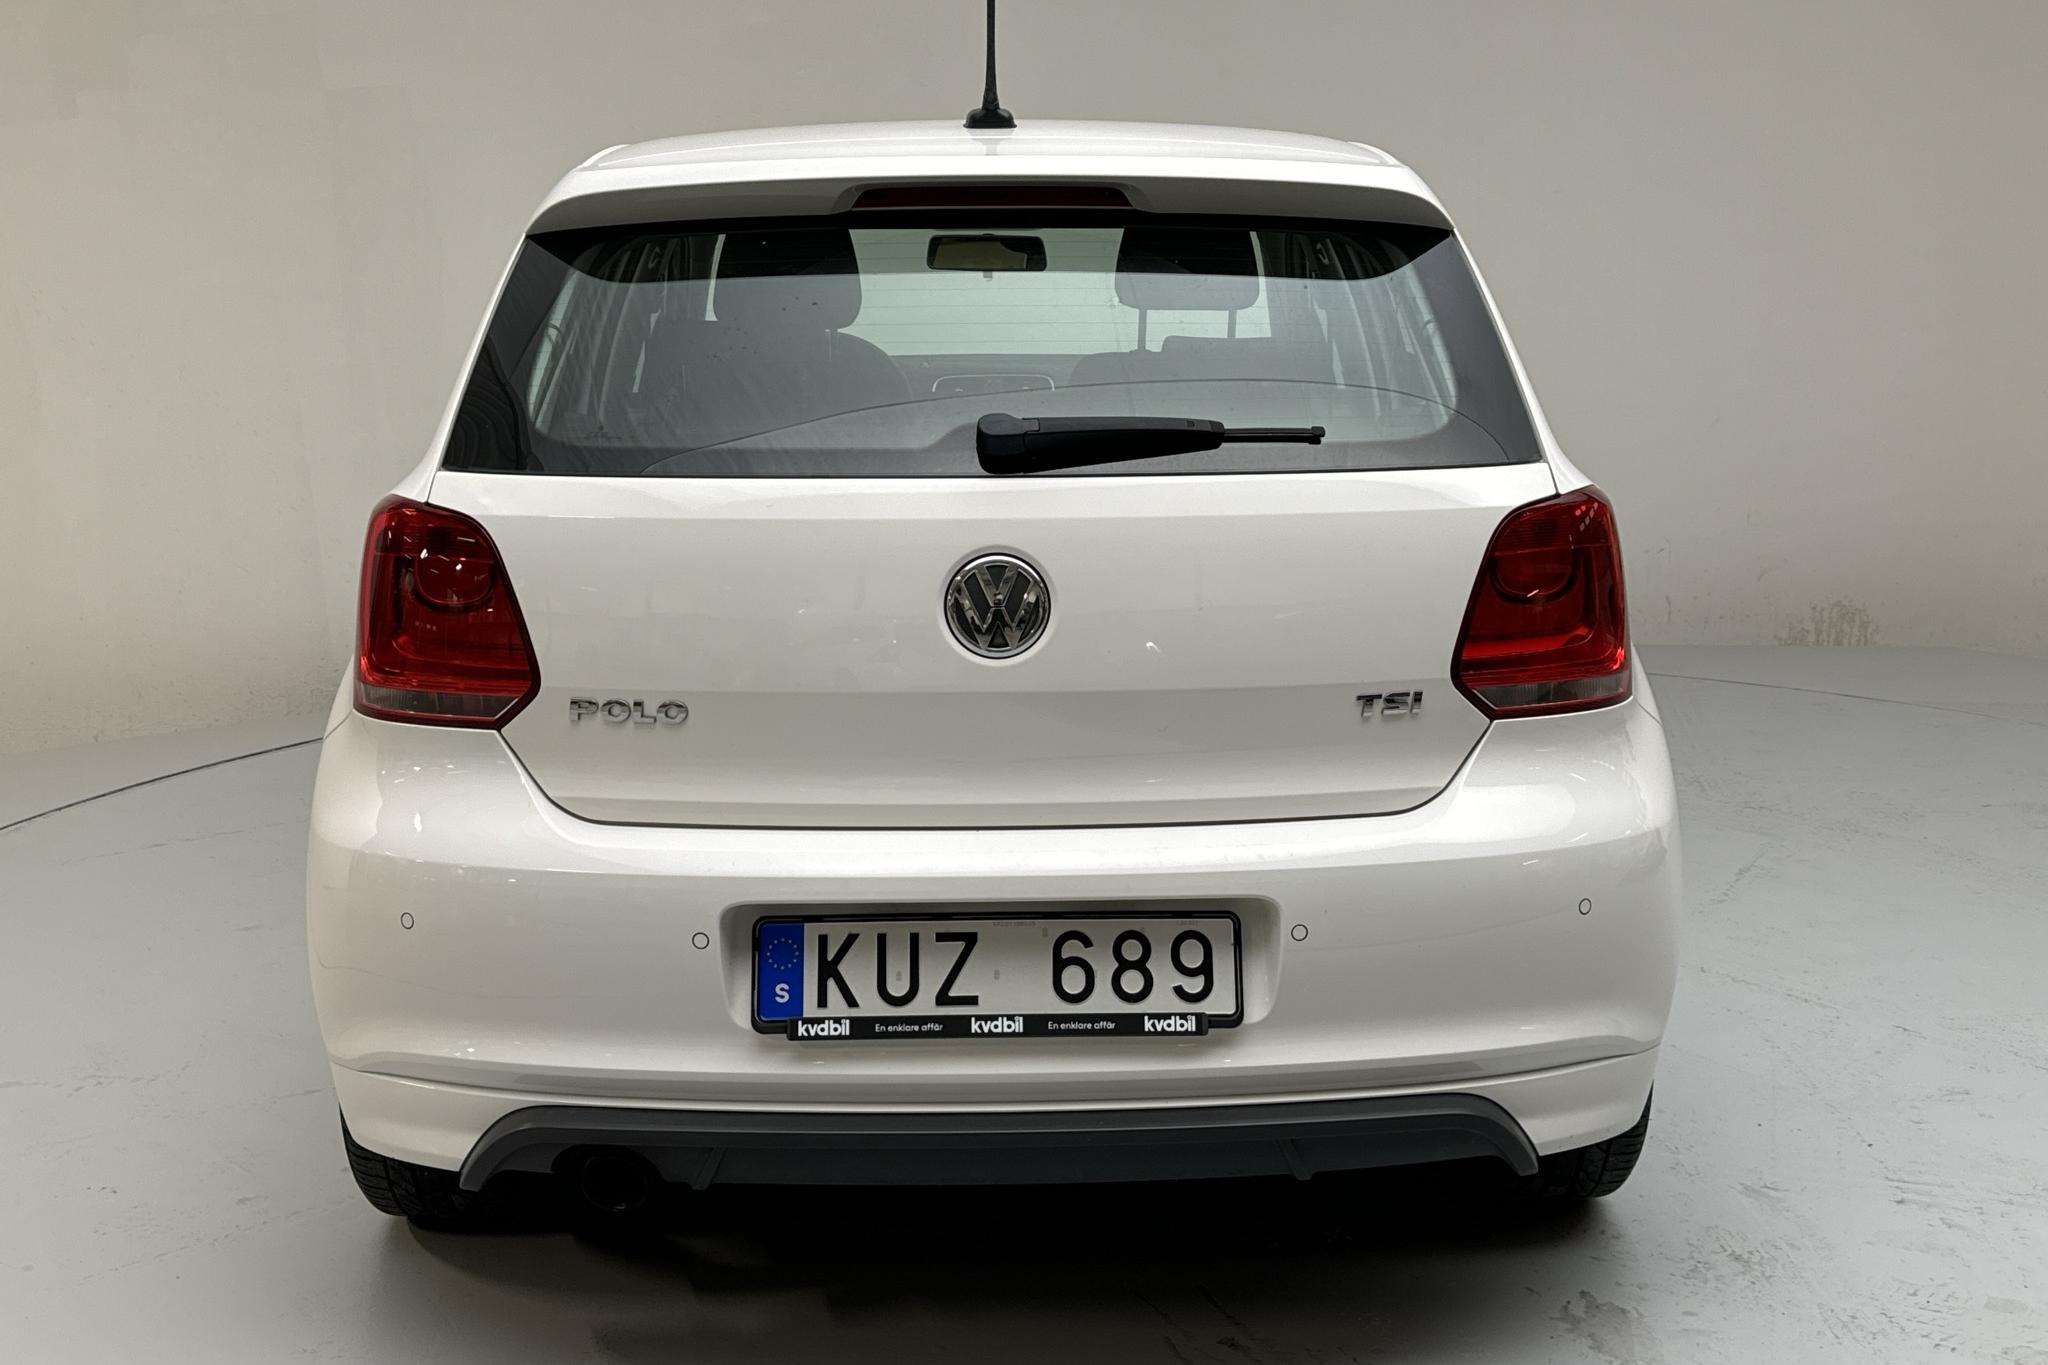 VW Polo 1.2 TSI 5dr (90hk) - 170 030 km - Manualna - biały - 2013